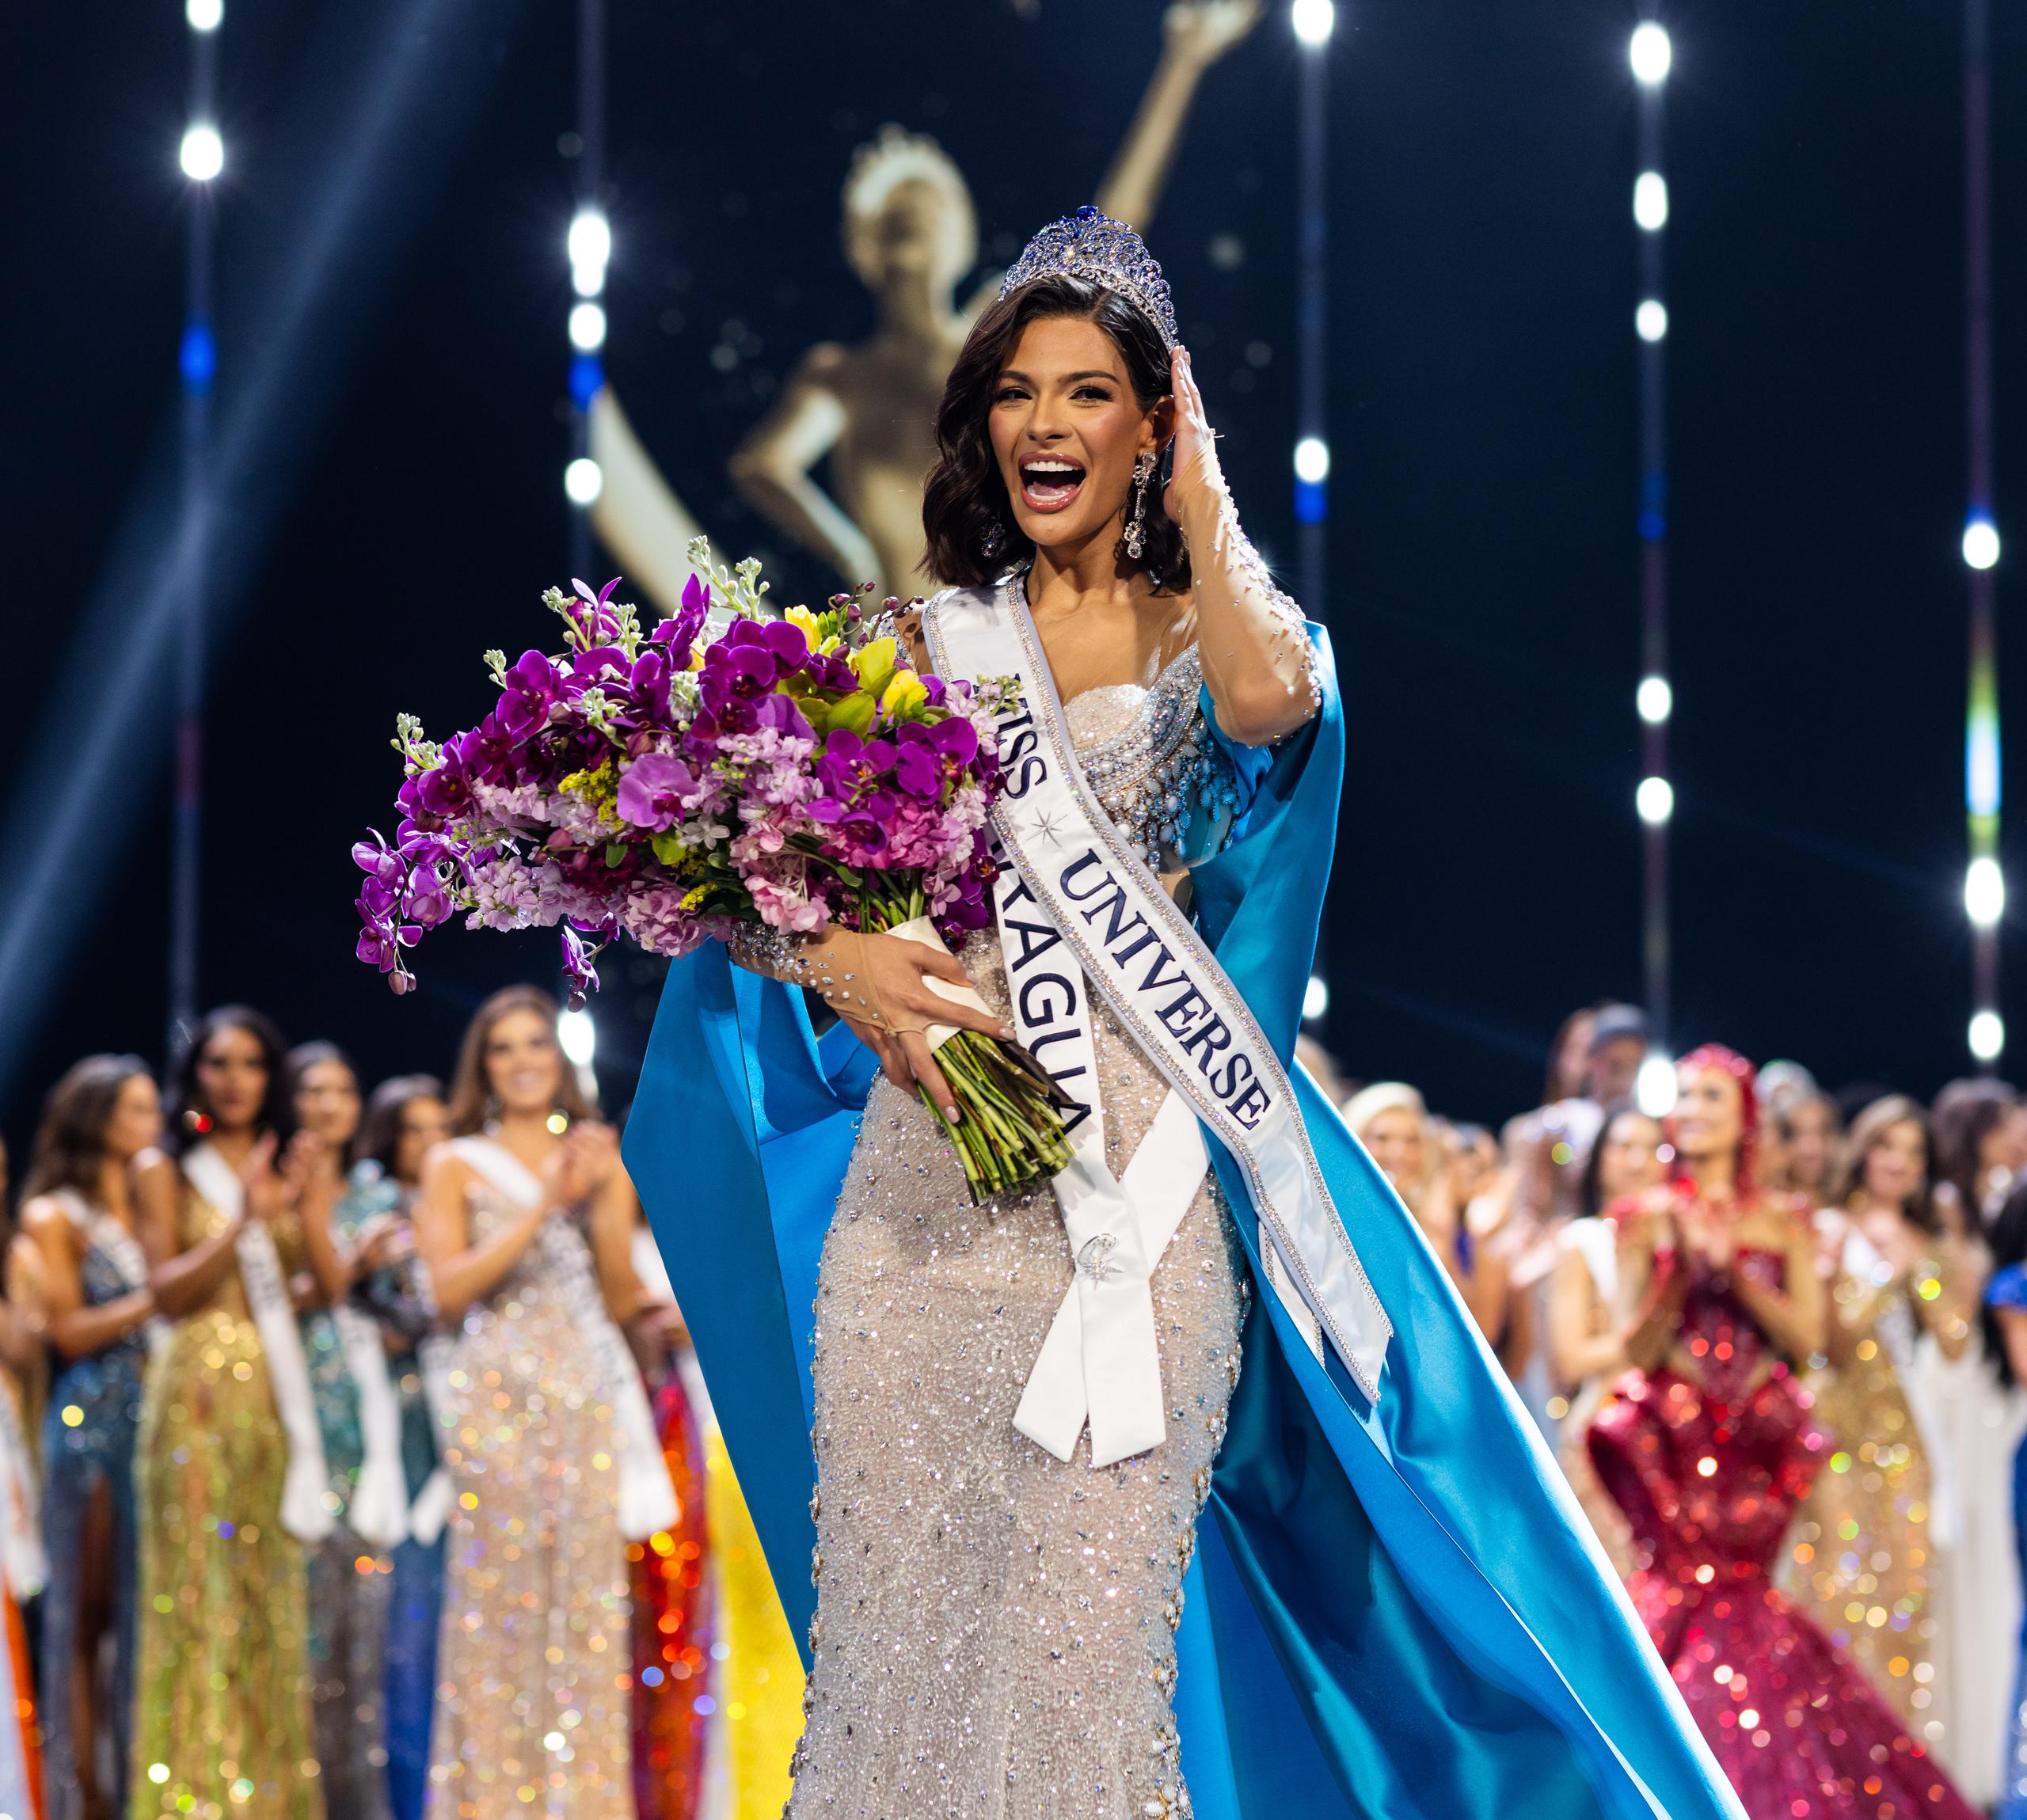 La coronación de la nicaragüense Sheynnis Palacios como Miss Universe 2023 generó una explosión de júbilo popular en Nicaragua y también provocó la ira del gobierno del presidente del país, Daniel Ortega.